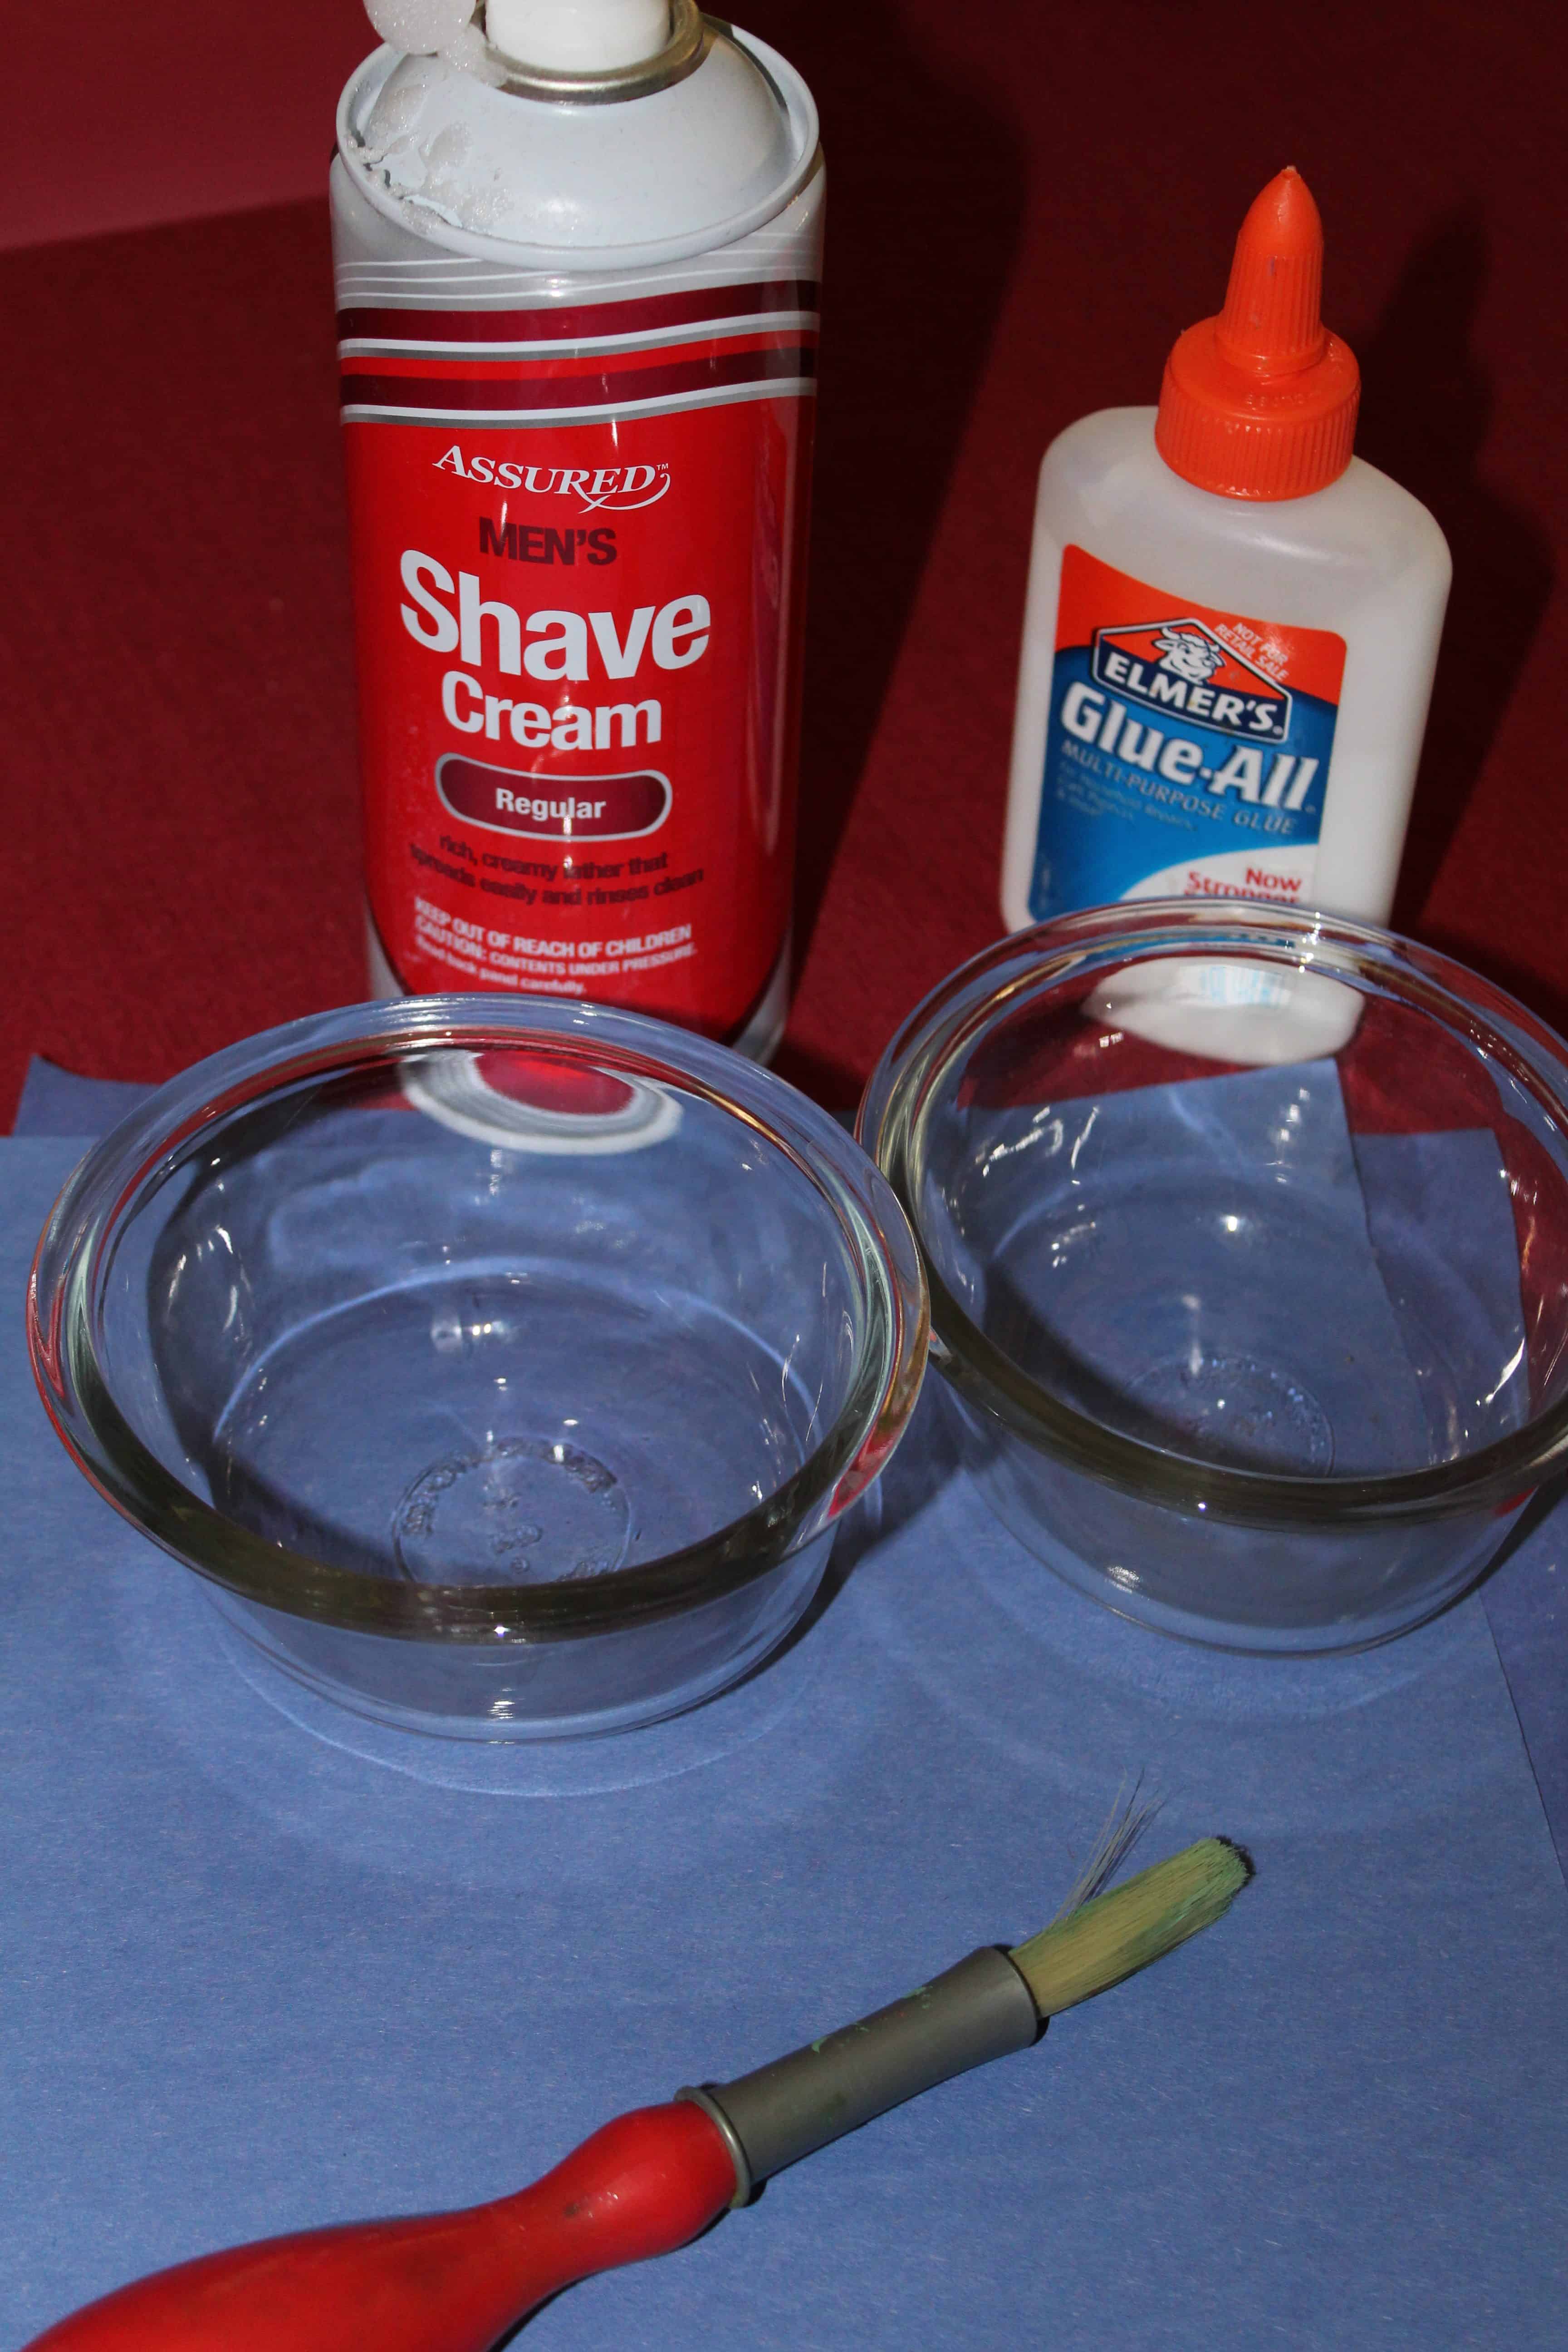 shaving cream and glue